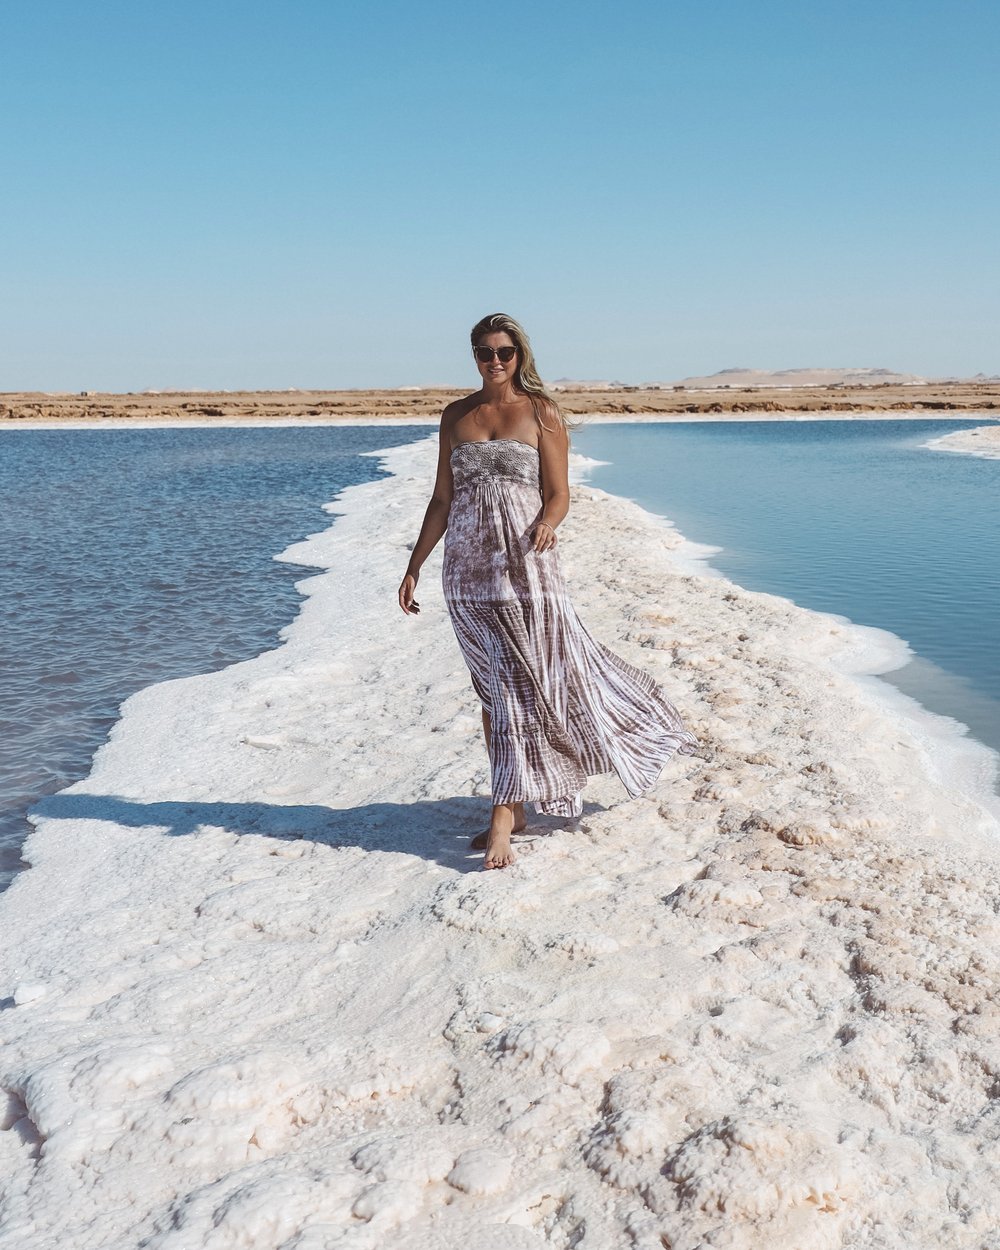 Salt passage - Siwa Salt Lakes - Siwa Oasis - Egypt